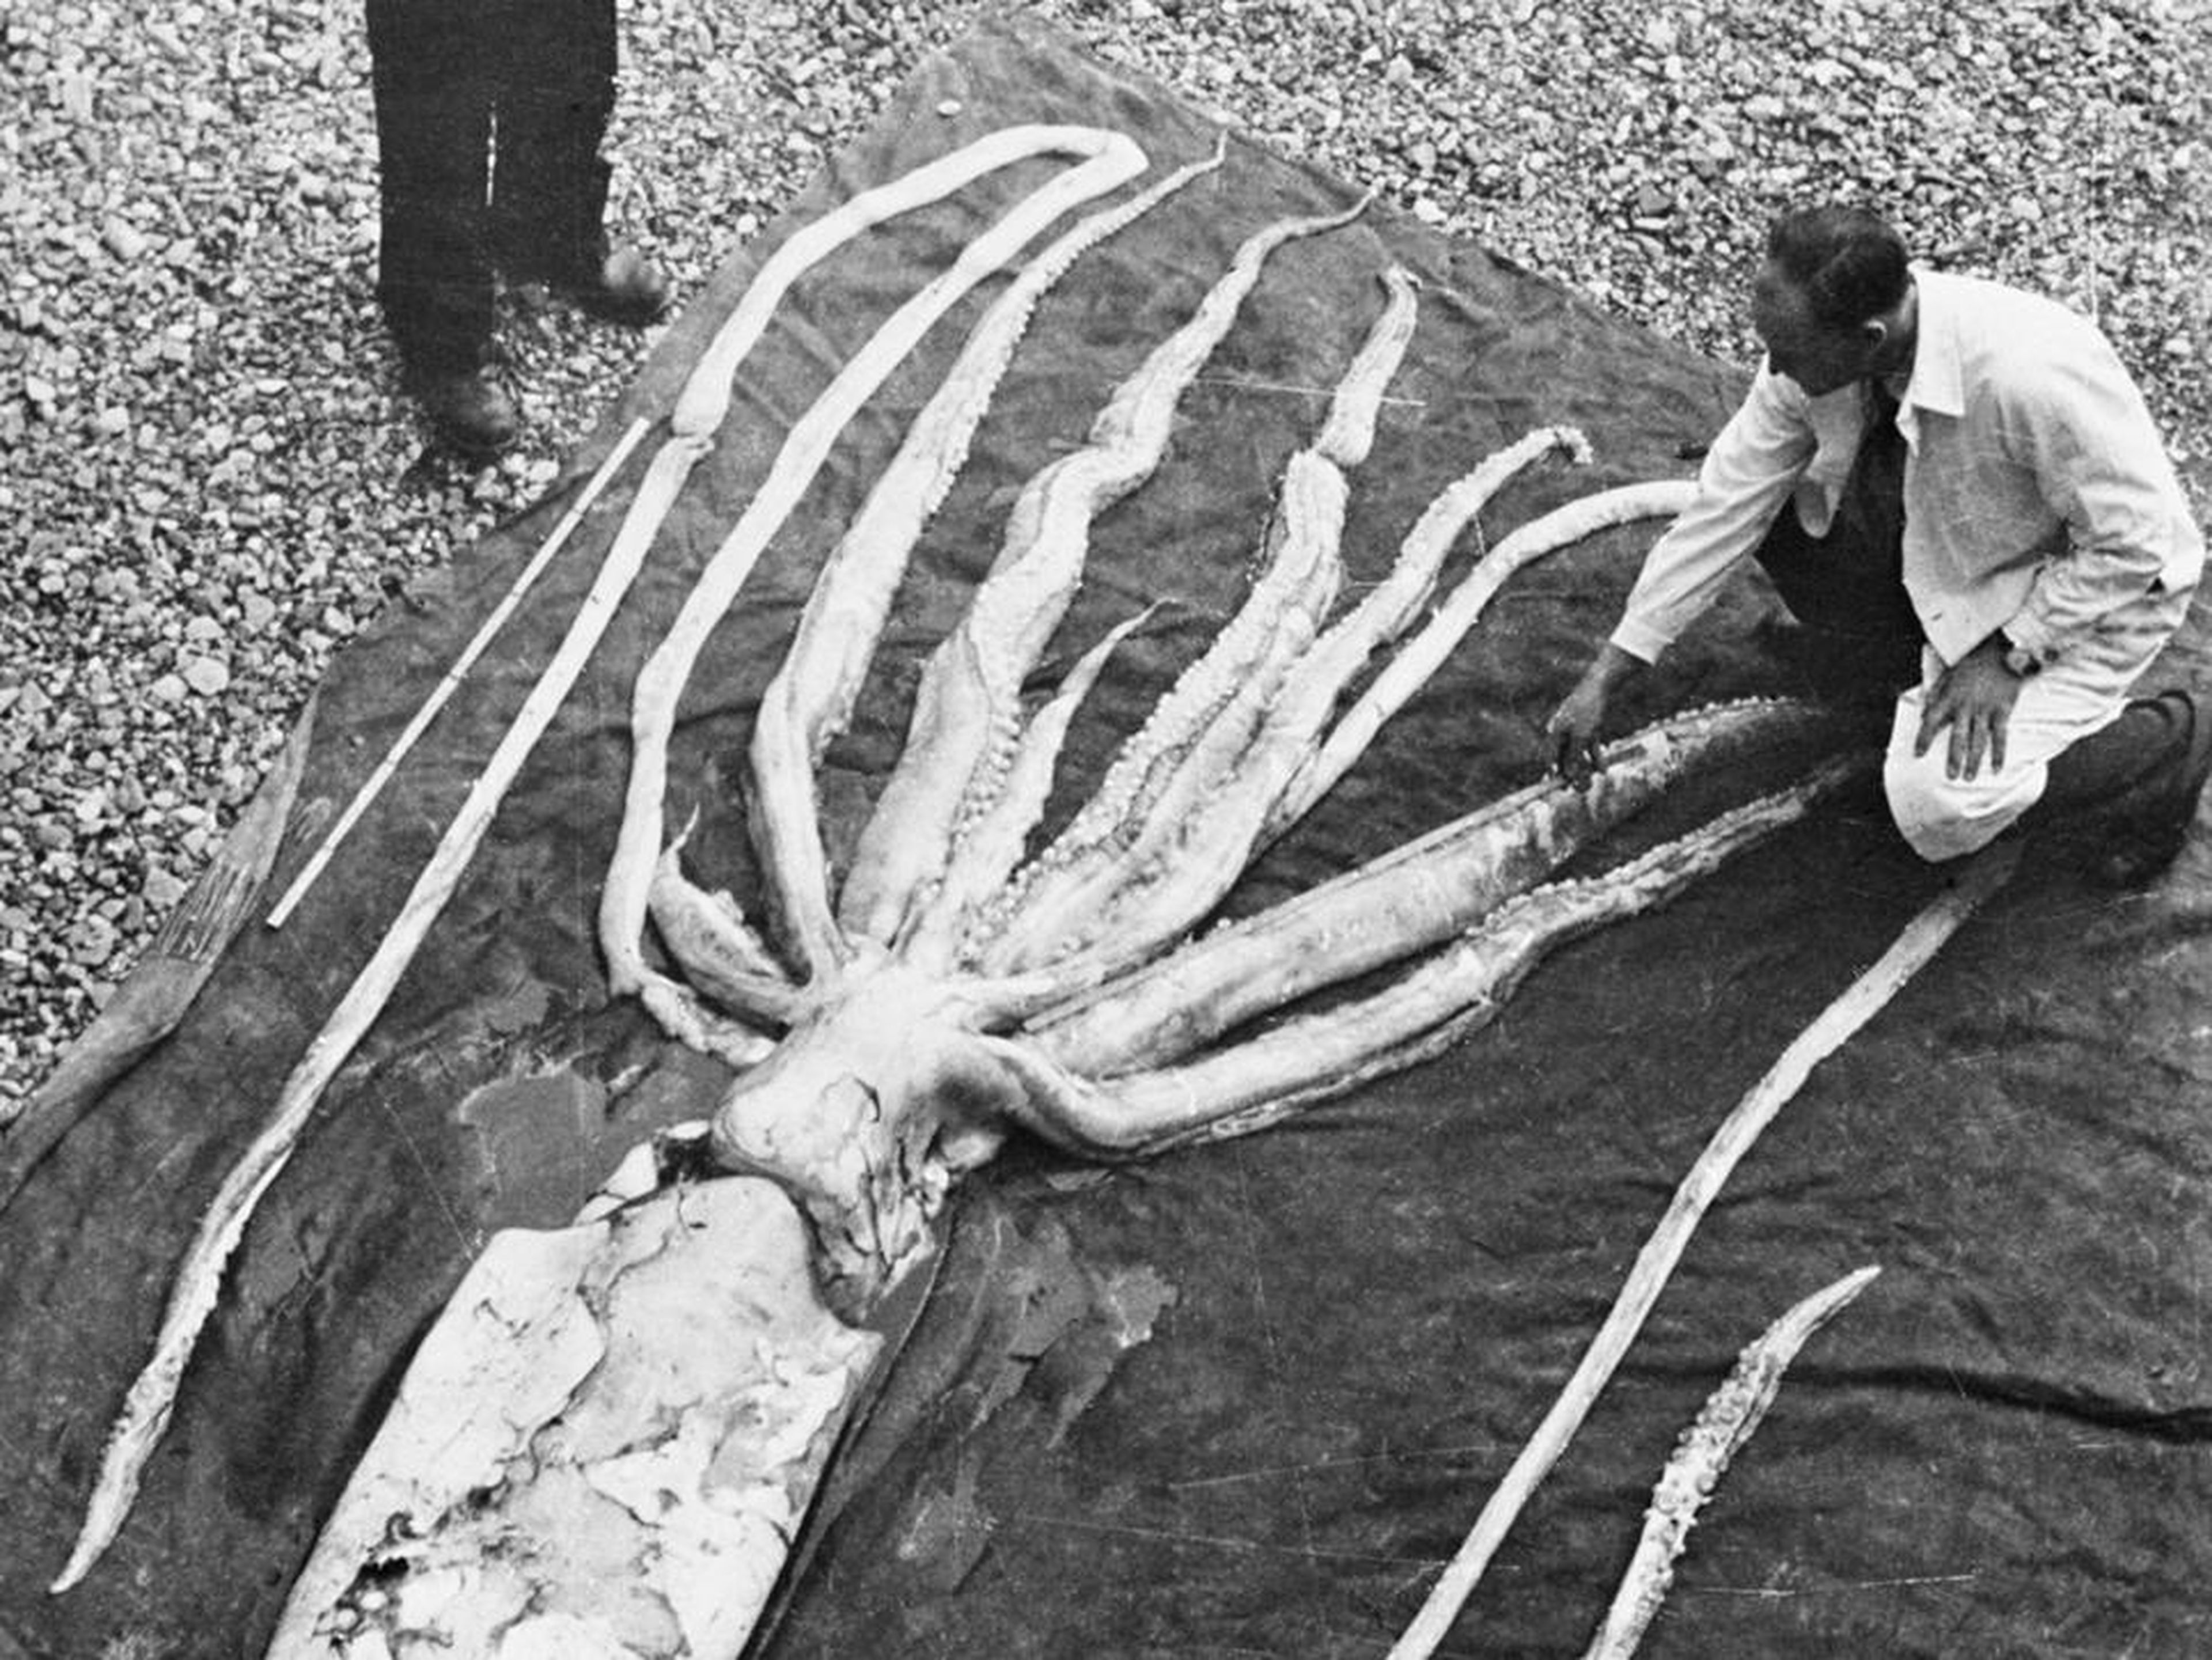 Calamar gigante encontrado en Ranheim, Noruega, en 1954, medido por los profesores Erling Sivertsen y Svein Haftorn.